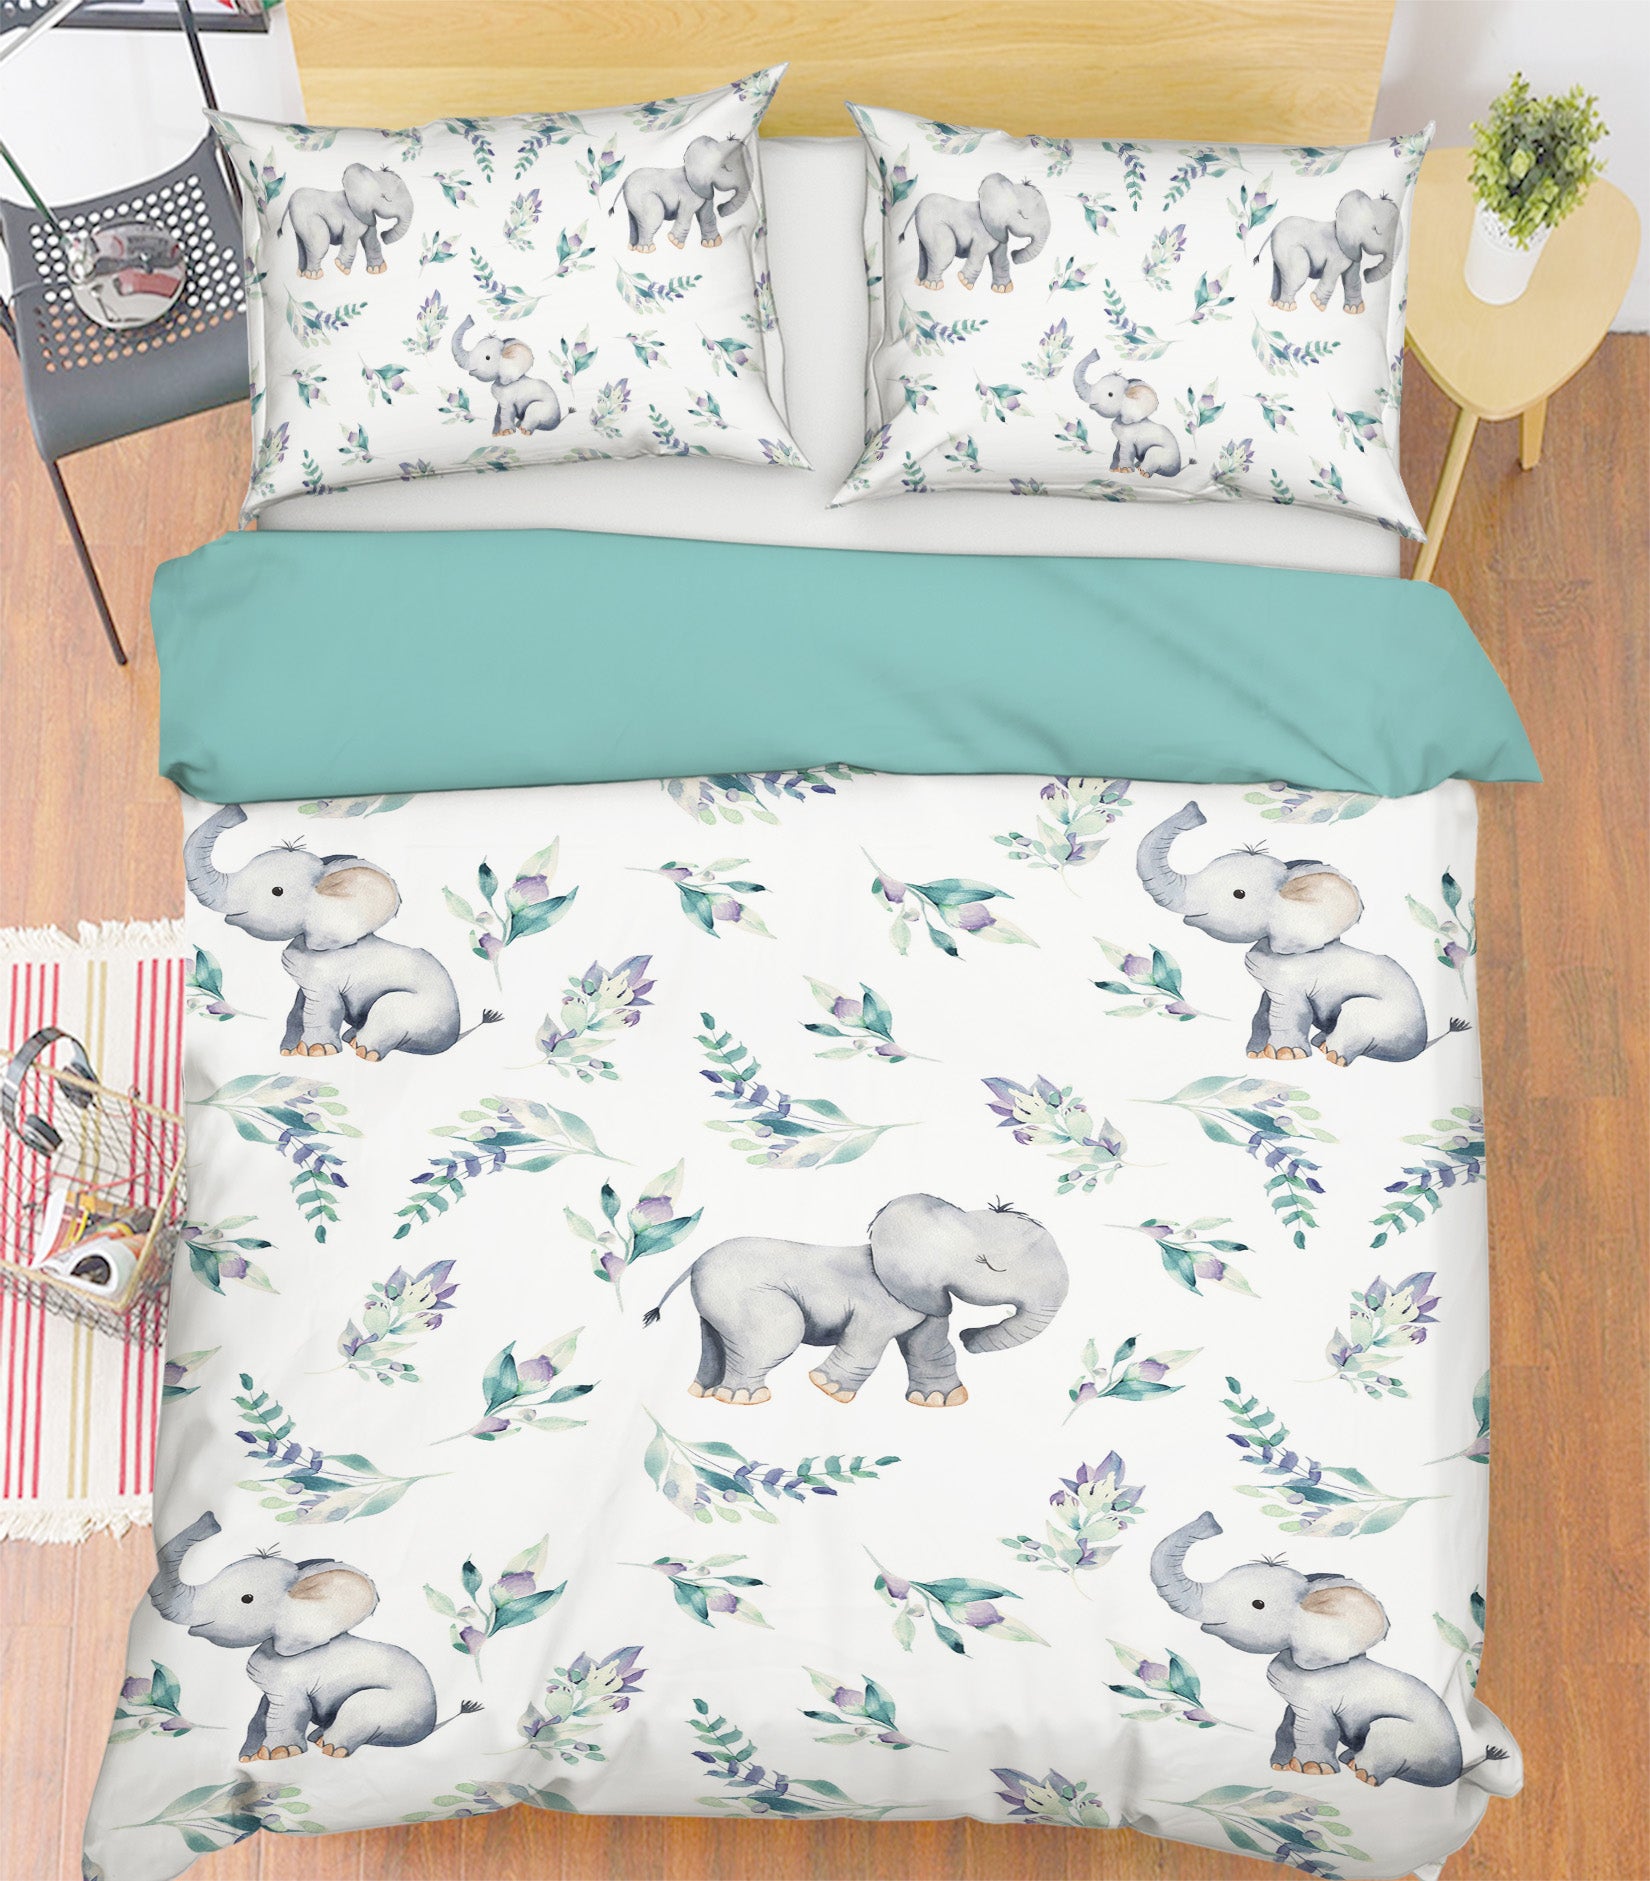 3D Elephant Rose 221 Uta Naumann Bedding Bed Pillowcases Quilt